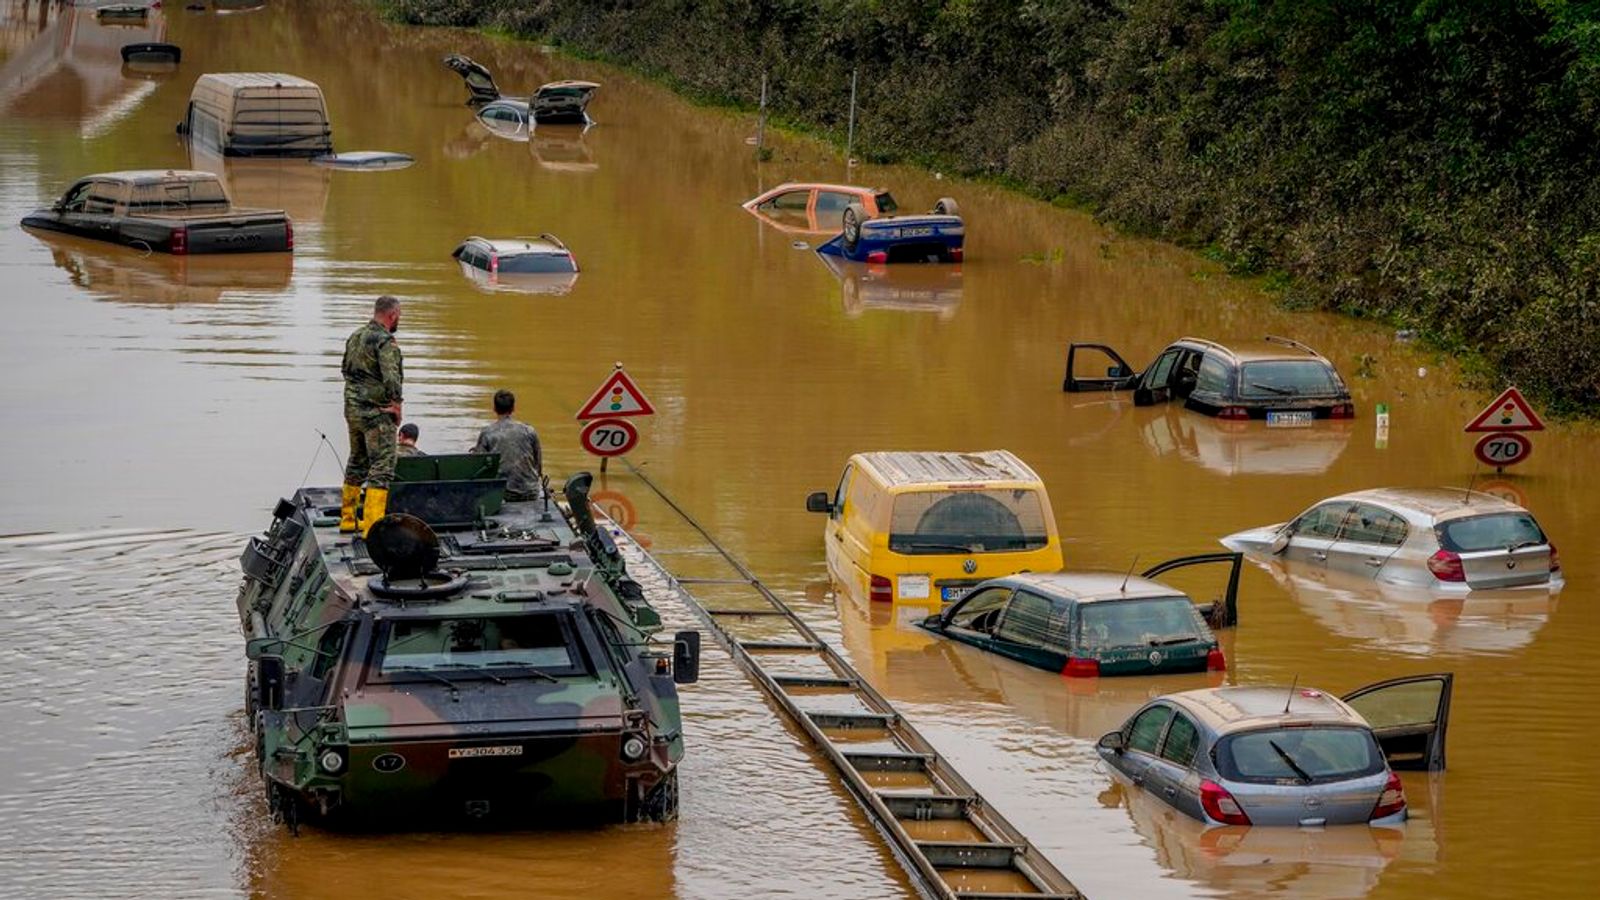 Überschwemmungen in Deutschland und Belgien: Zahl der Todesopfer mindestens 170 |  Die größte Rettungsaktion ist im Gange, seit sie World News erreicht hat